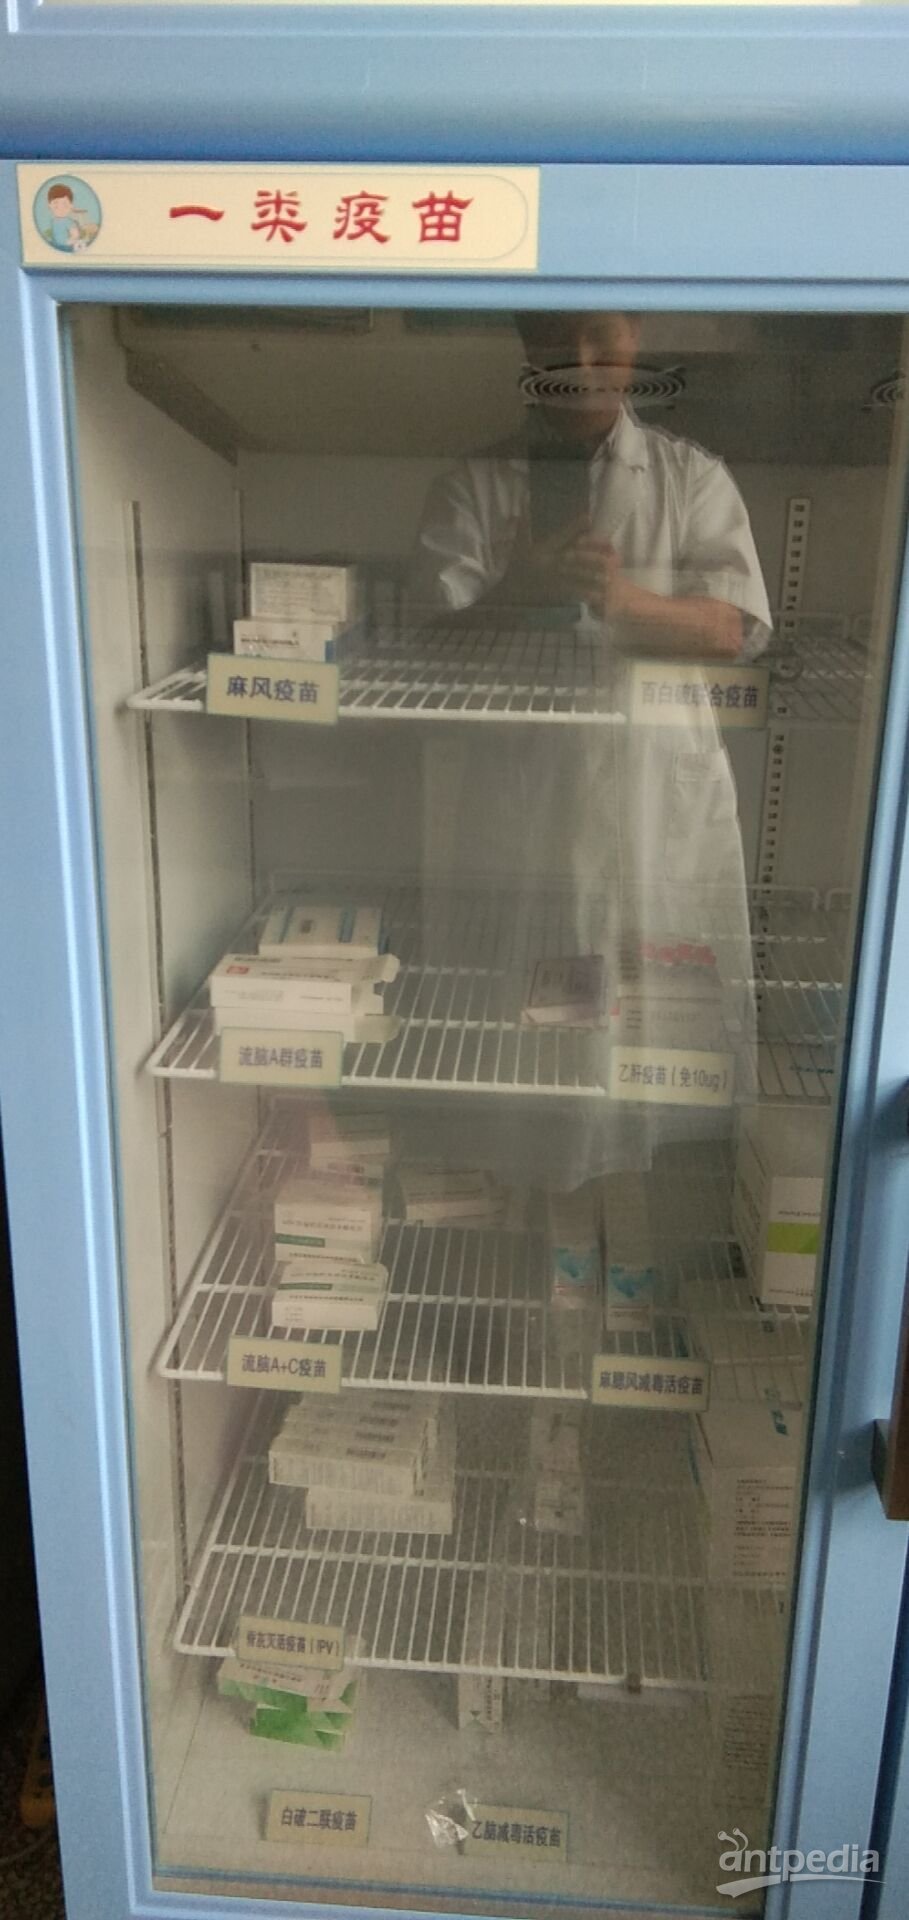 疫苗存储医用冷藏箱（柜）